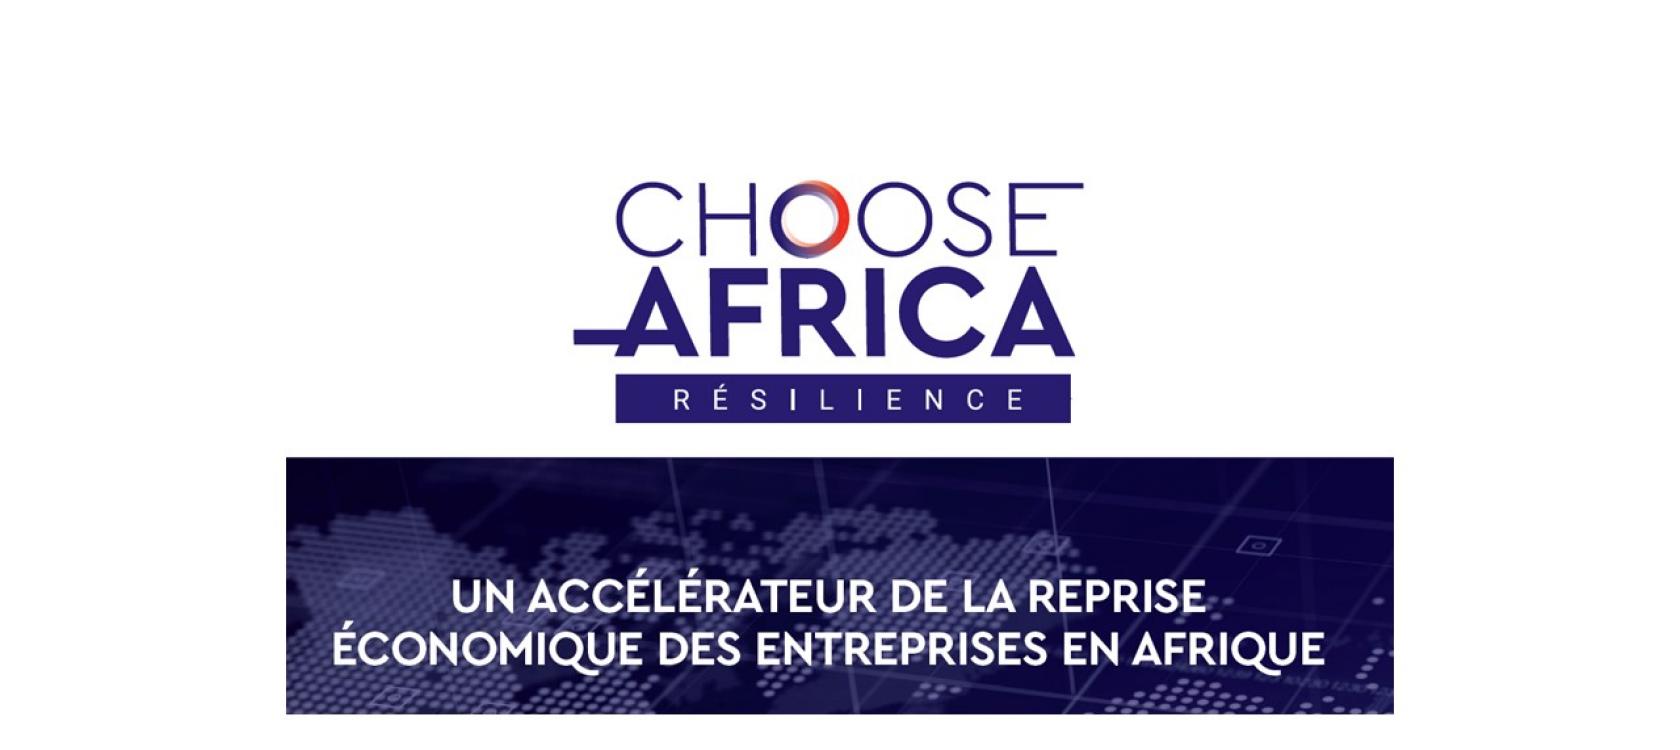 Choose Africa : 1 milliards d’euros supplémentaire pour soutenir les TPE/PME en Afrique touchées par la crise.